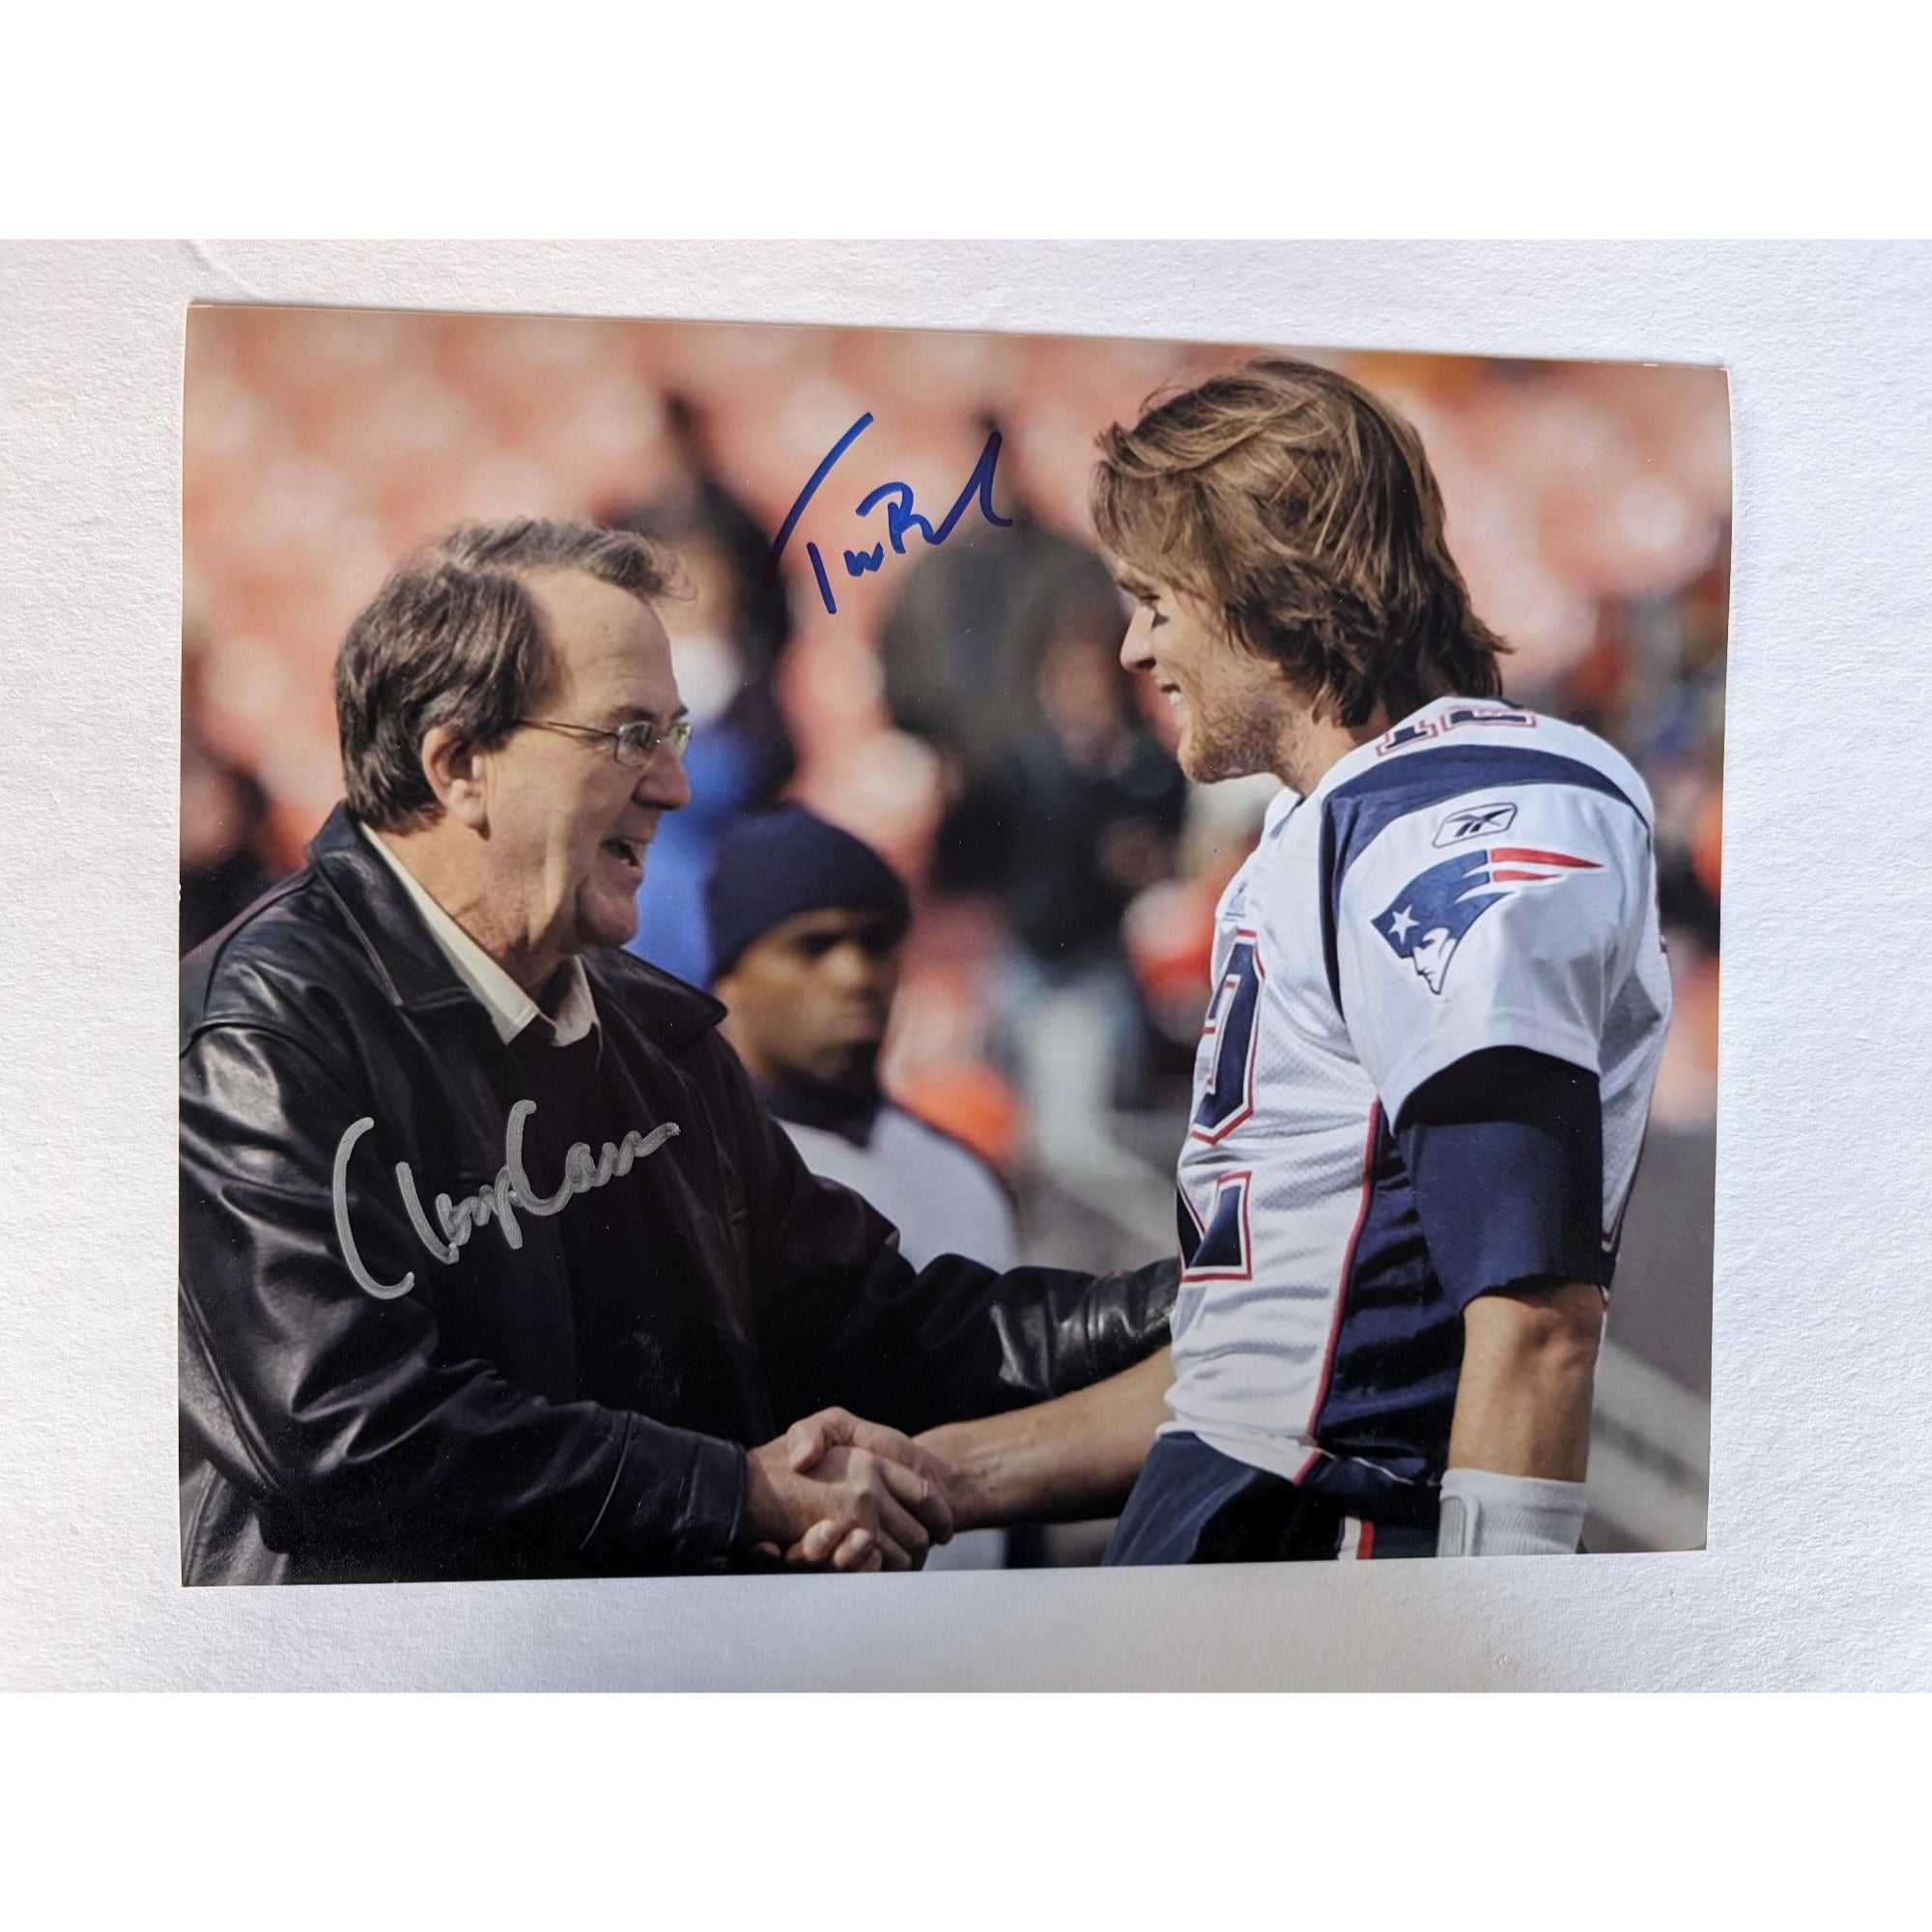 Tom Brady and former Michigan head coach Lloyd Carr 8x10 photo signed